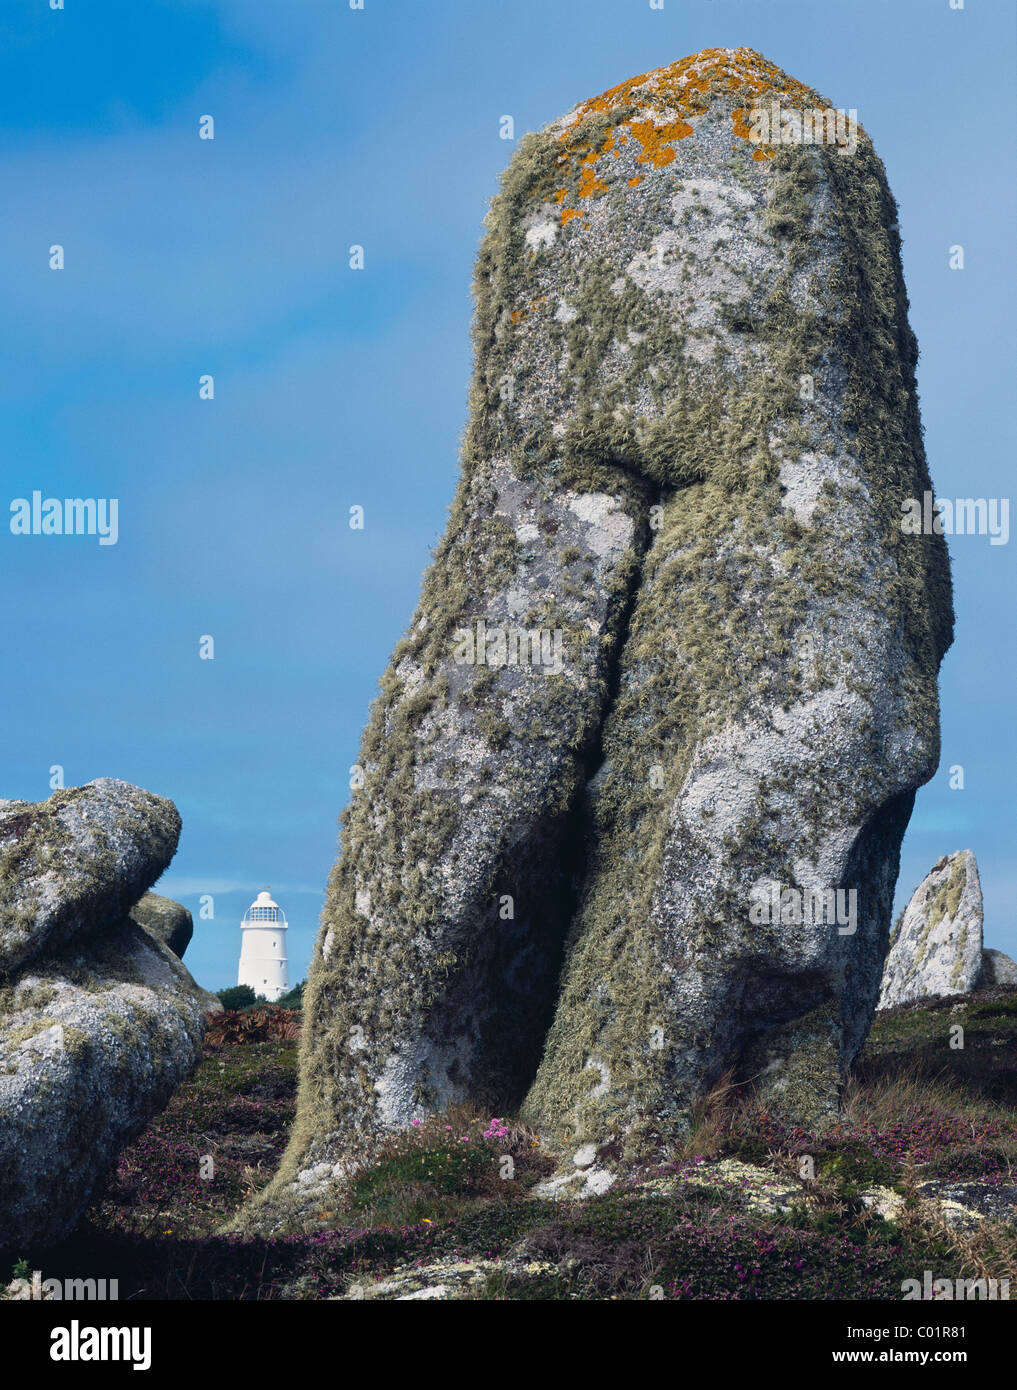 Eine suggestive natürliche Gesteinsformation, die weiblichen Genitalien ähnelt, auf der Insel St. Agnes, Isles of Scilly, Großbritannien Stockfoto